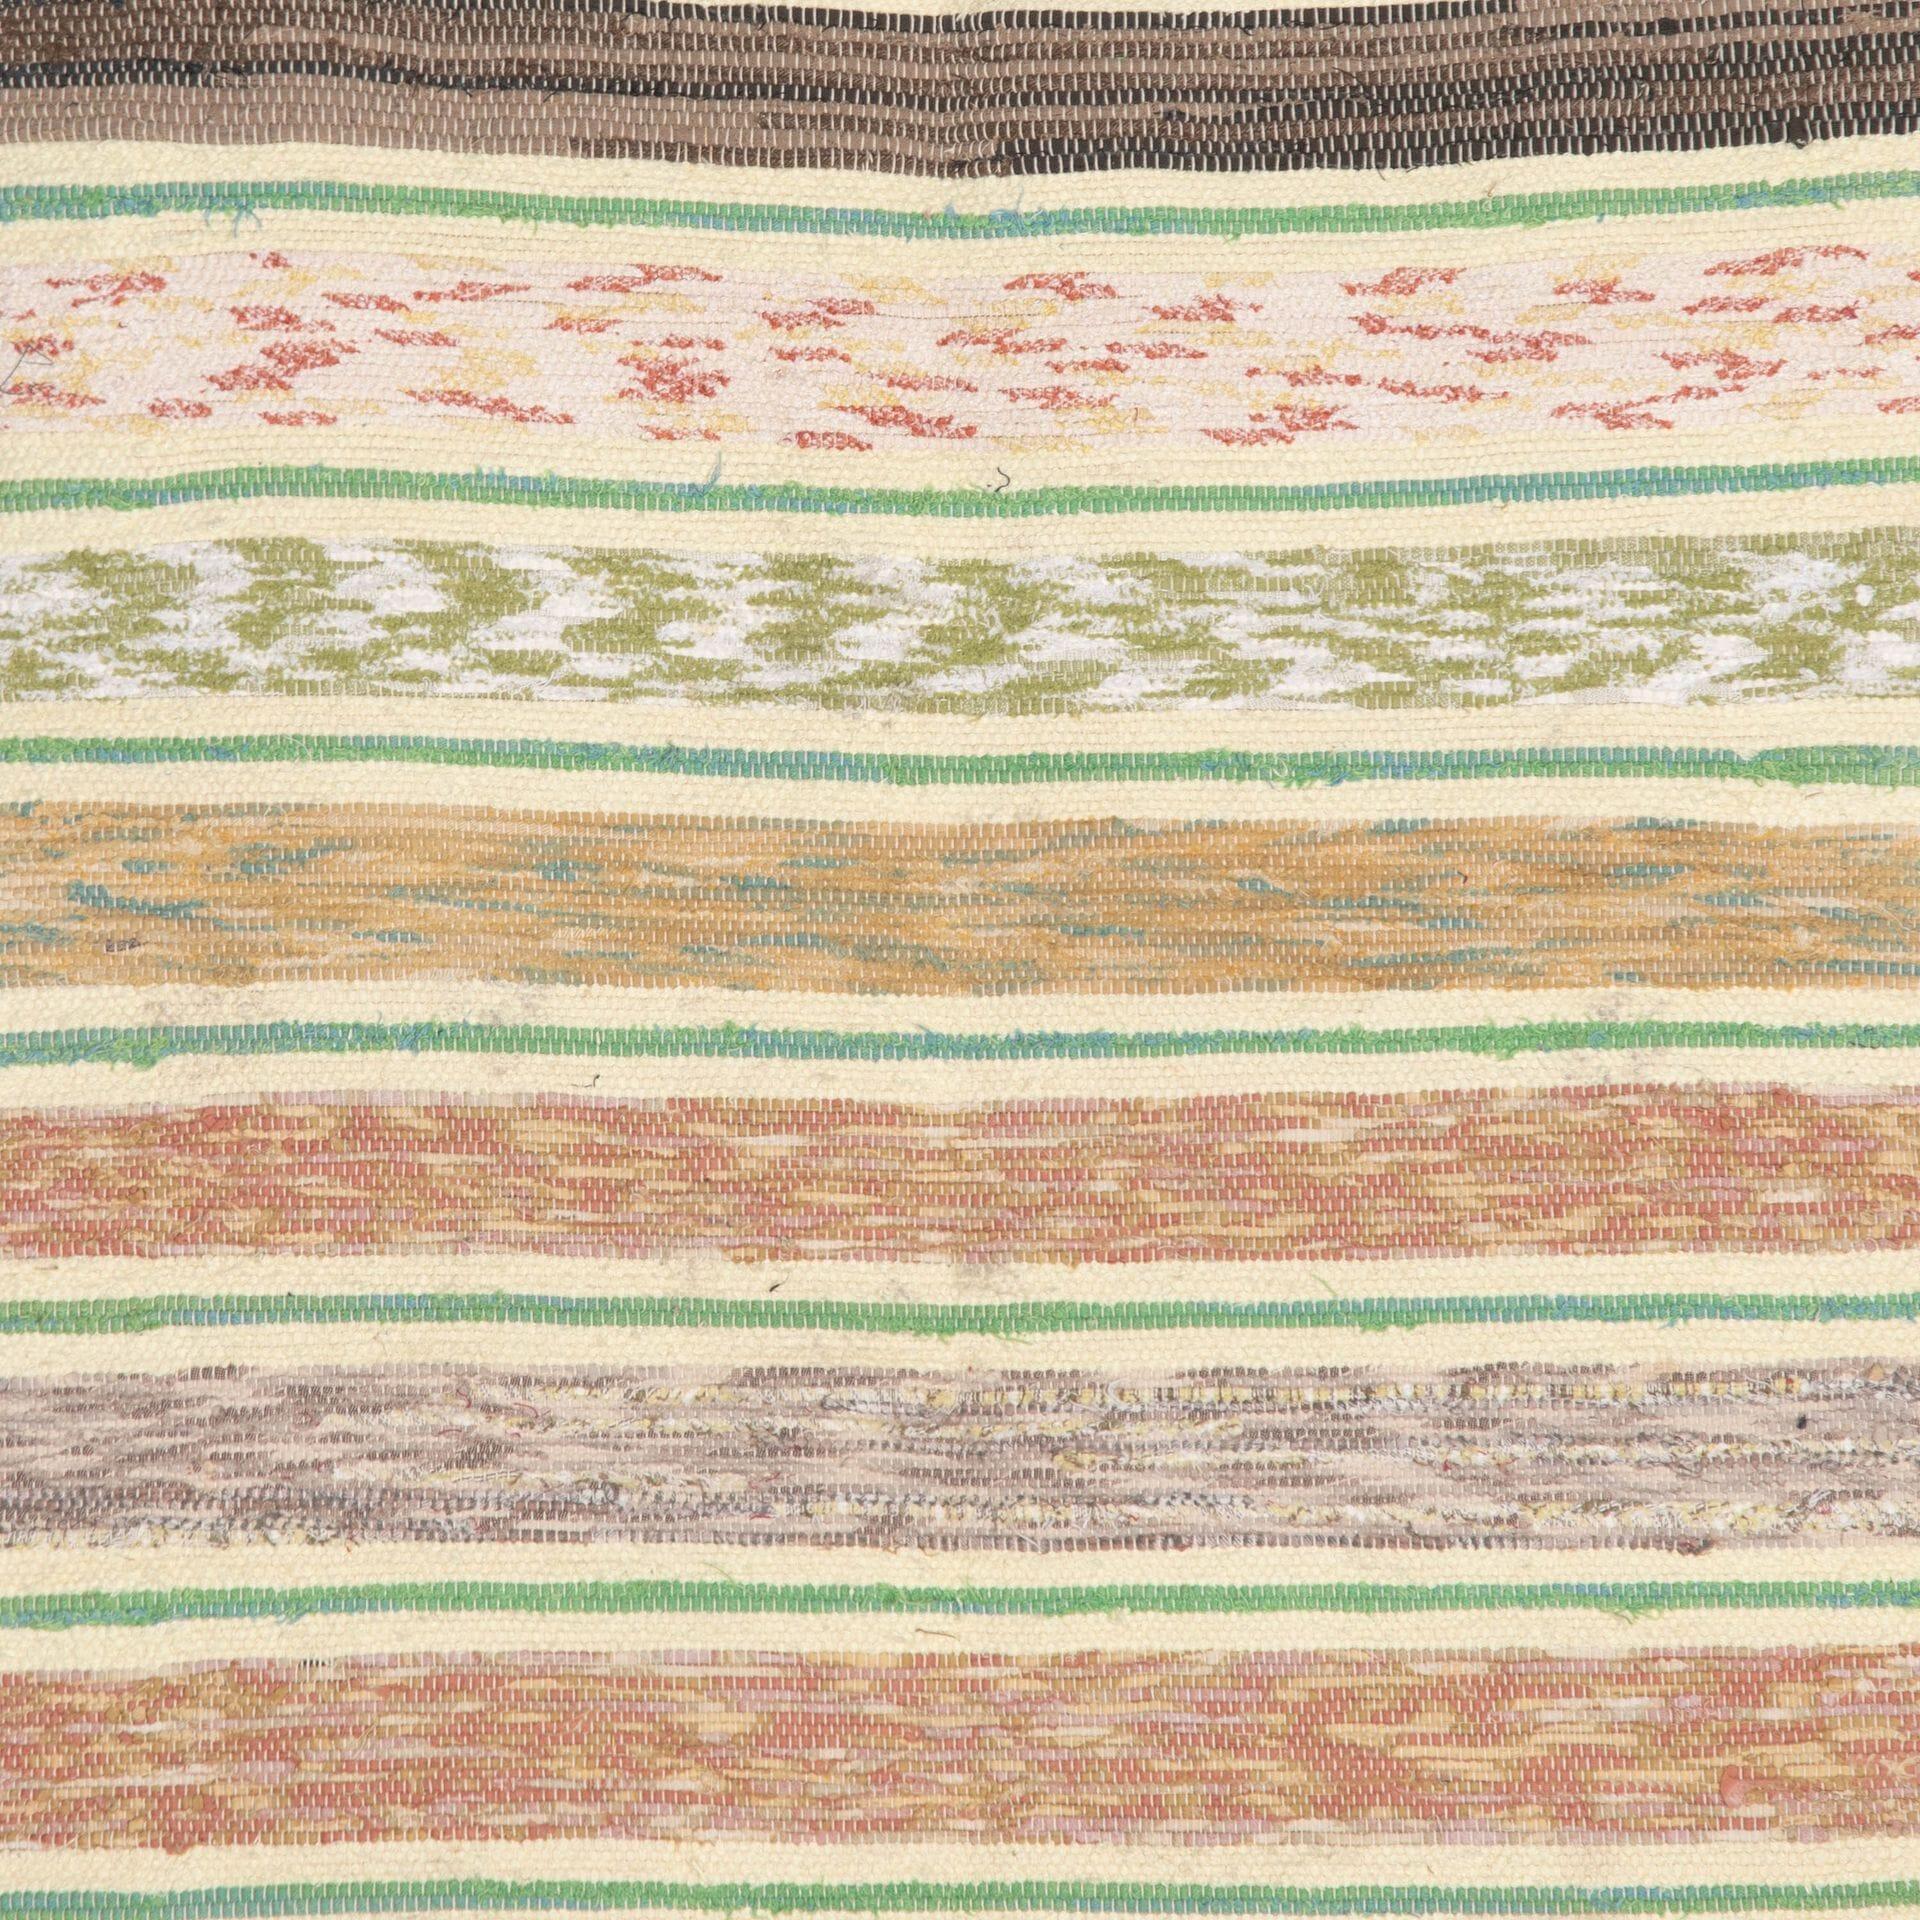 Traditioneller schwedischer Teppich des 20. Jahrhunderts, grün, braun, gelb, grau, rosa.